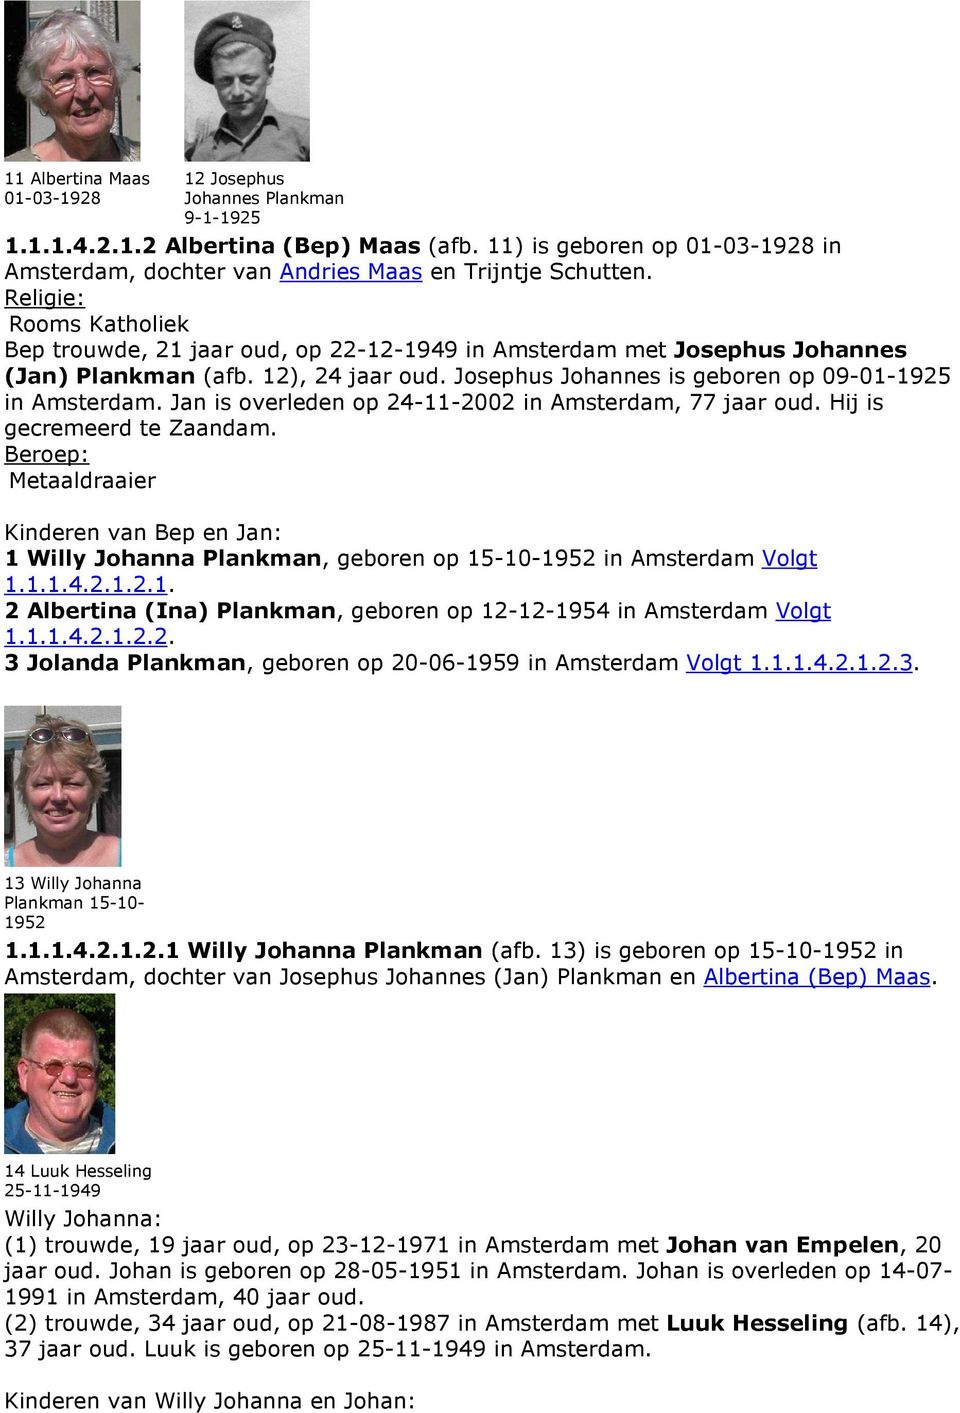 Jan is overleden op 24-11-2002 in Amsterdam, 77 jaar oud. Hij is gecremeerd te Zaandam. Metaaldraaier Kinderen van Bep en Jan: 1 Willy Johanna Plankman, geboren op 15-10-1952 in Amsterdam Volgt 1.1.1.4.2.1.2.1. 2 Albertina (Ina) Plankman, geboren op 12-12-1954 in Amsterdam Volgt 1.